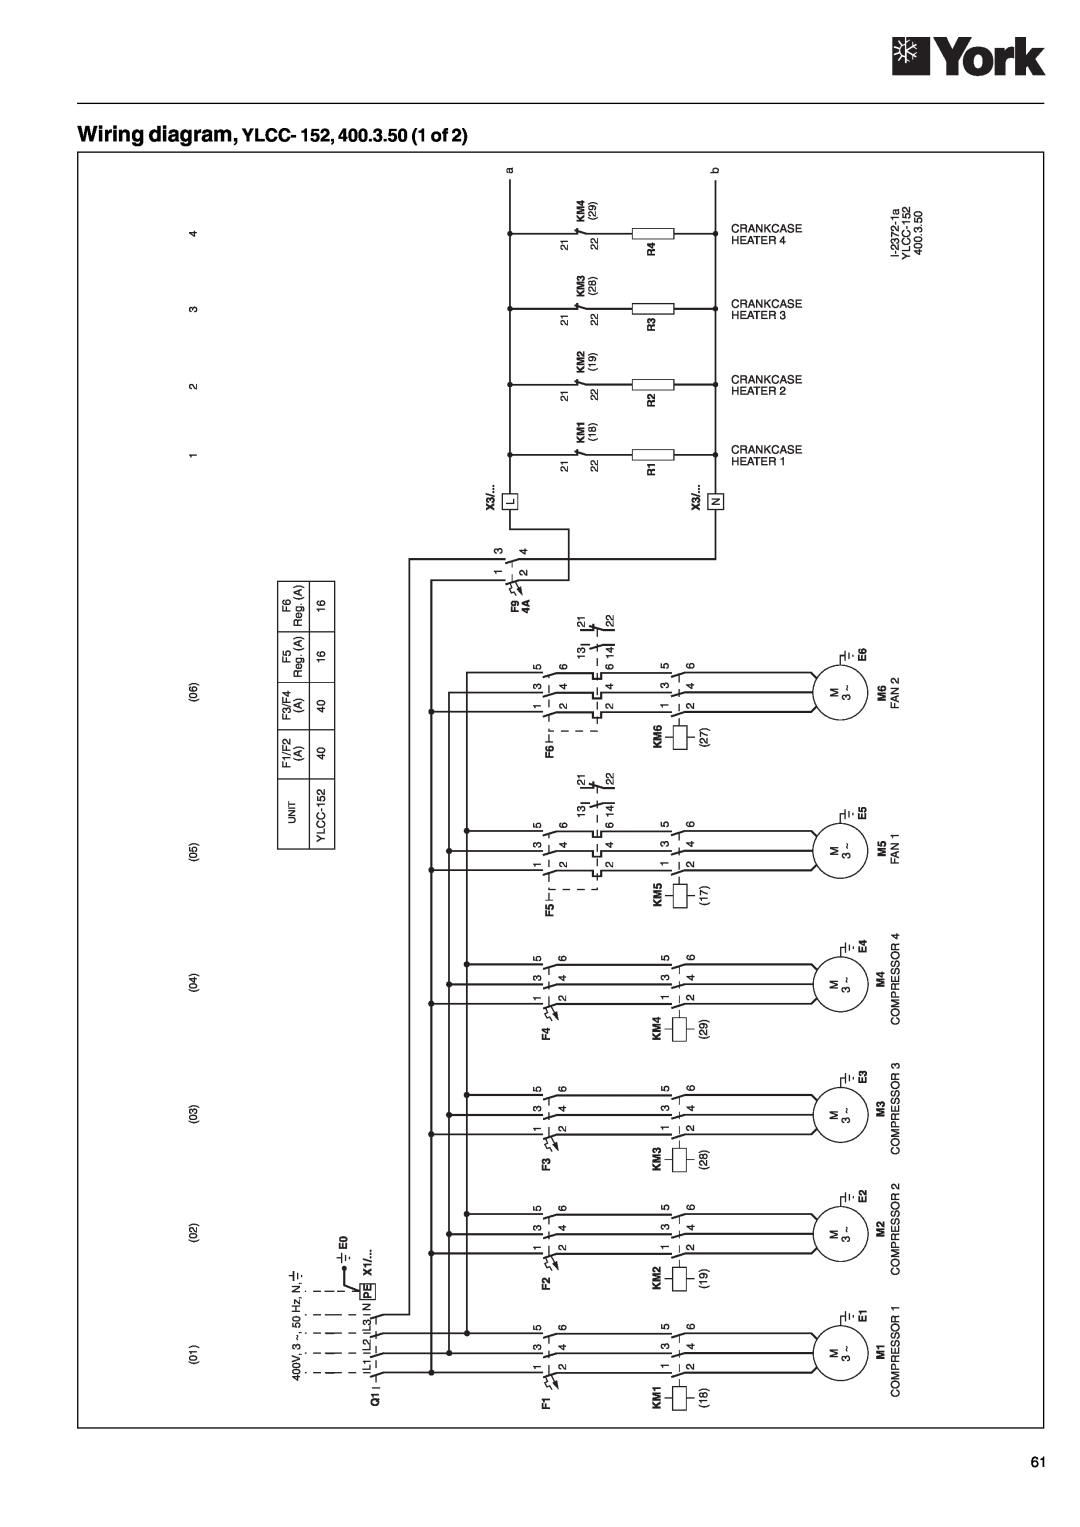 York YLCC-h, YLCC 42/62/82/102/112, 122 manual Wiring diagram, YLCC- 152, 400.3.50 1 of 